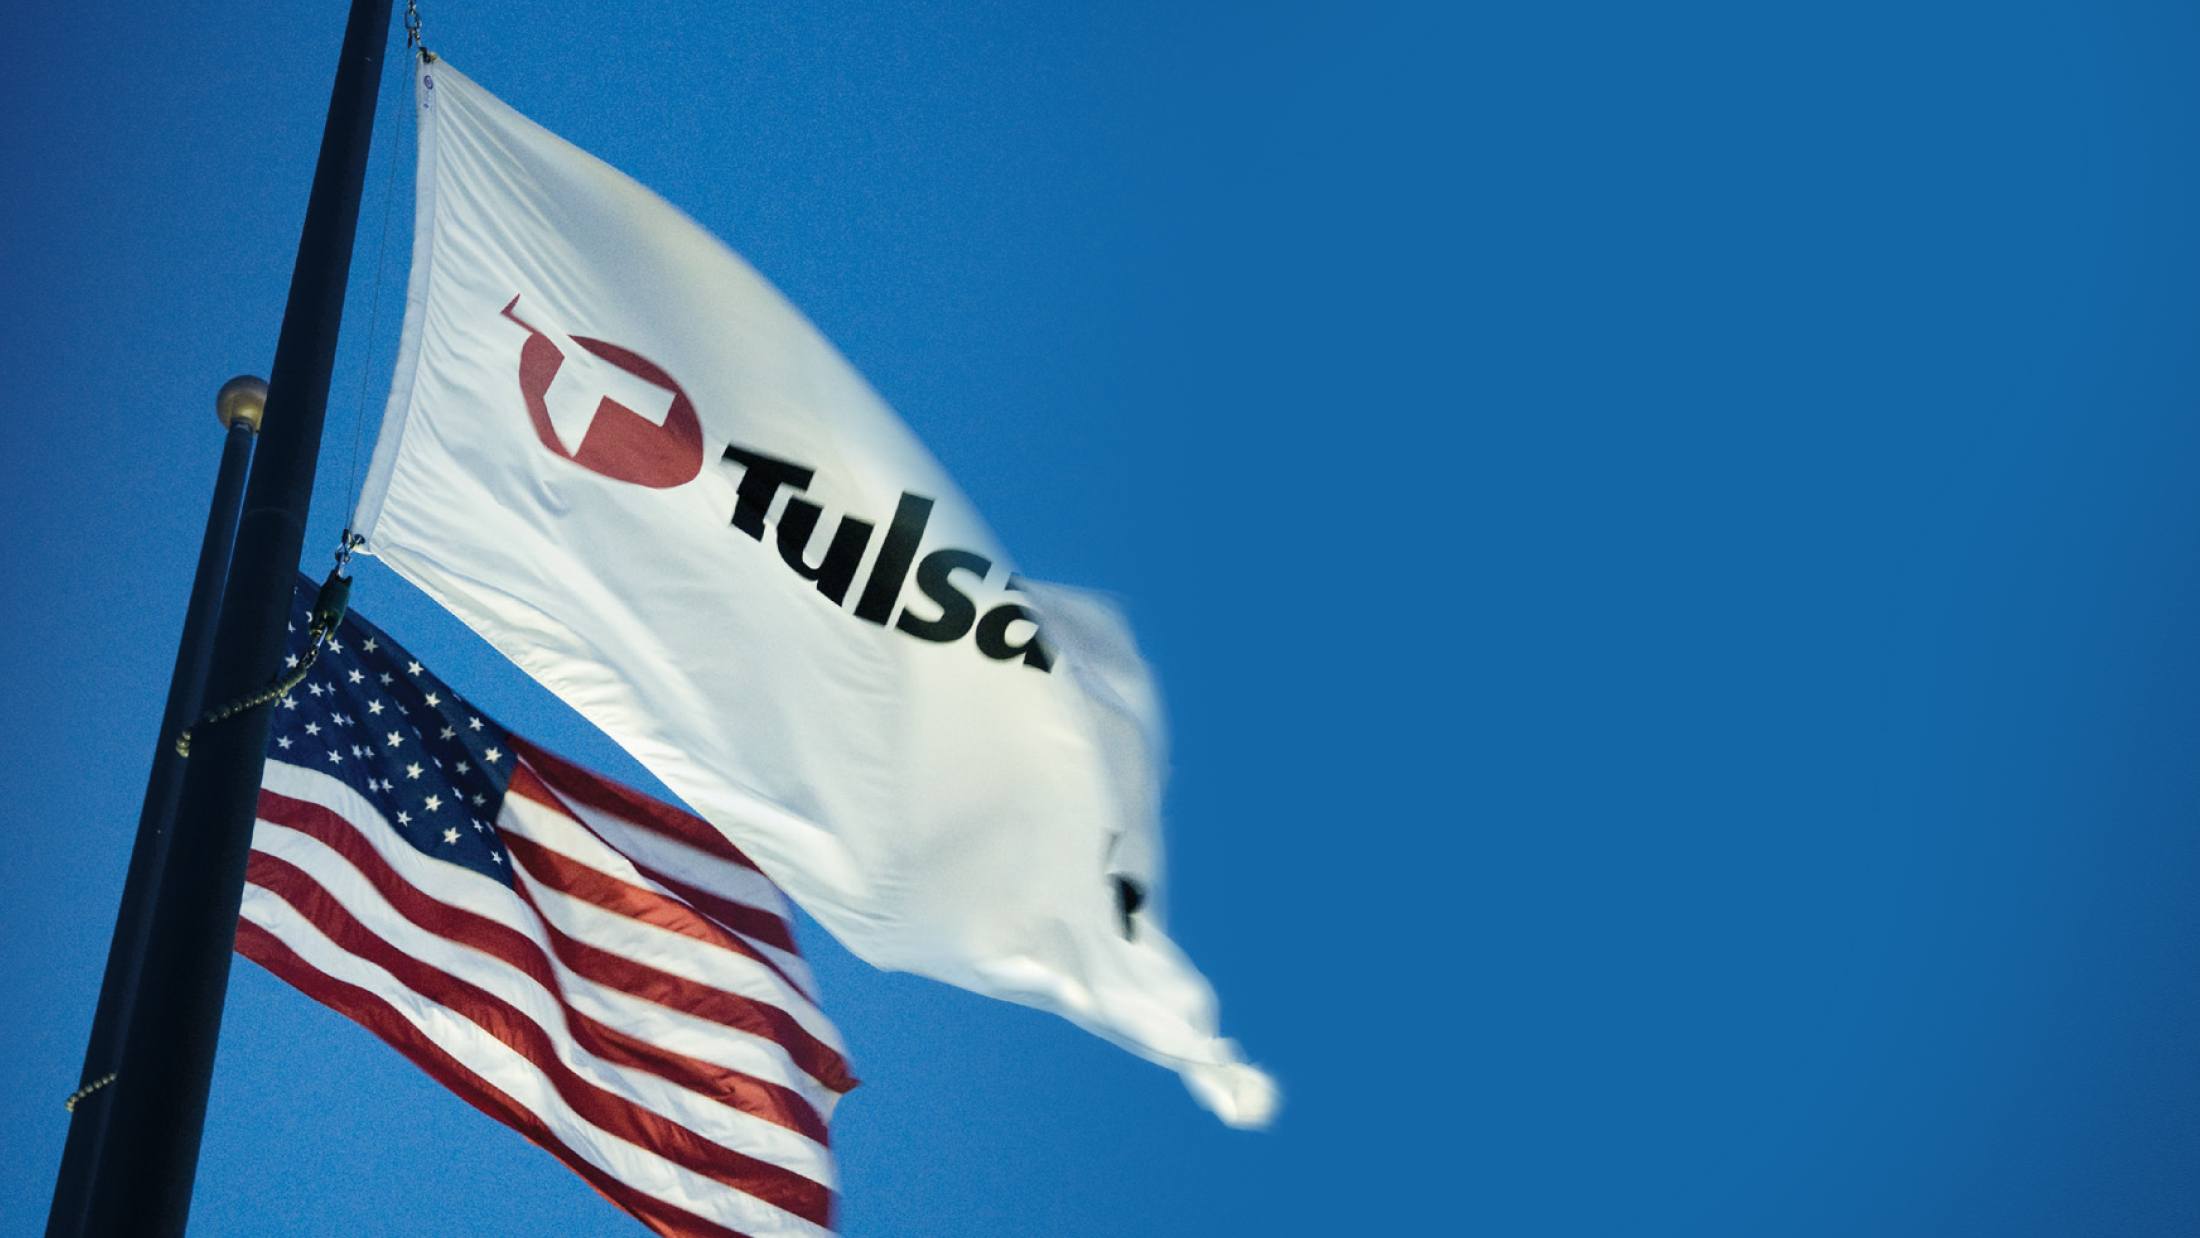 Tulsa Tech flag